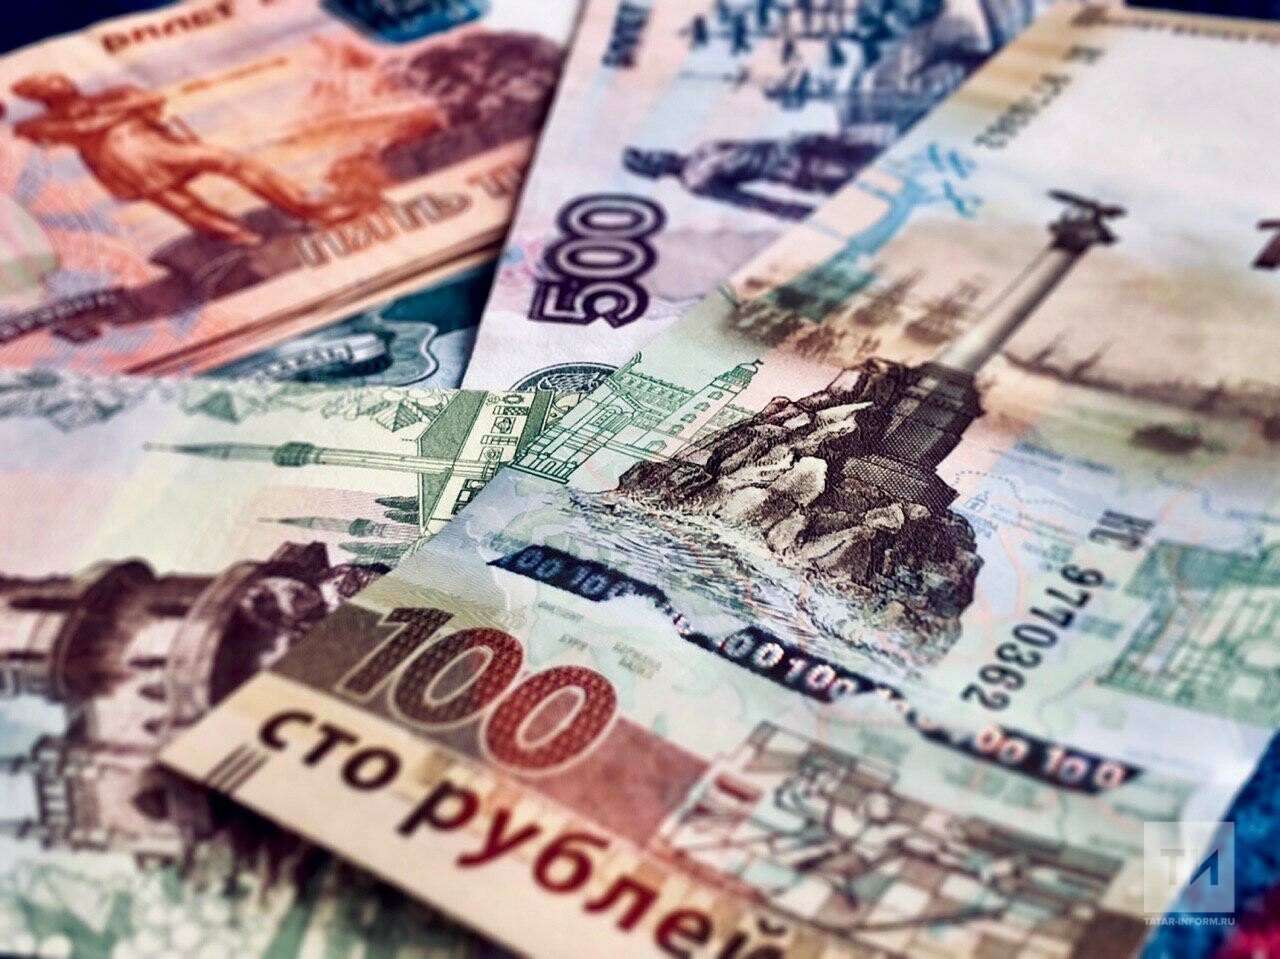 УФНС: Сбор налоговых платежей в Татарстане в 2021 году впервые превысит 1 трлн рублей